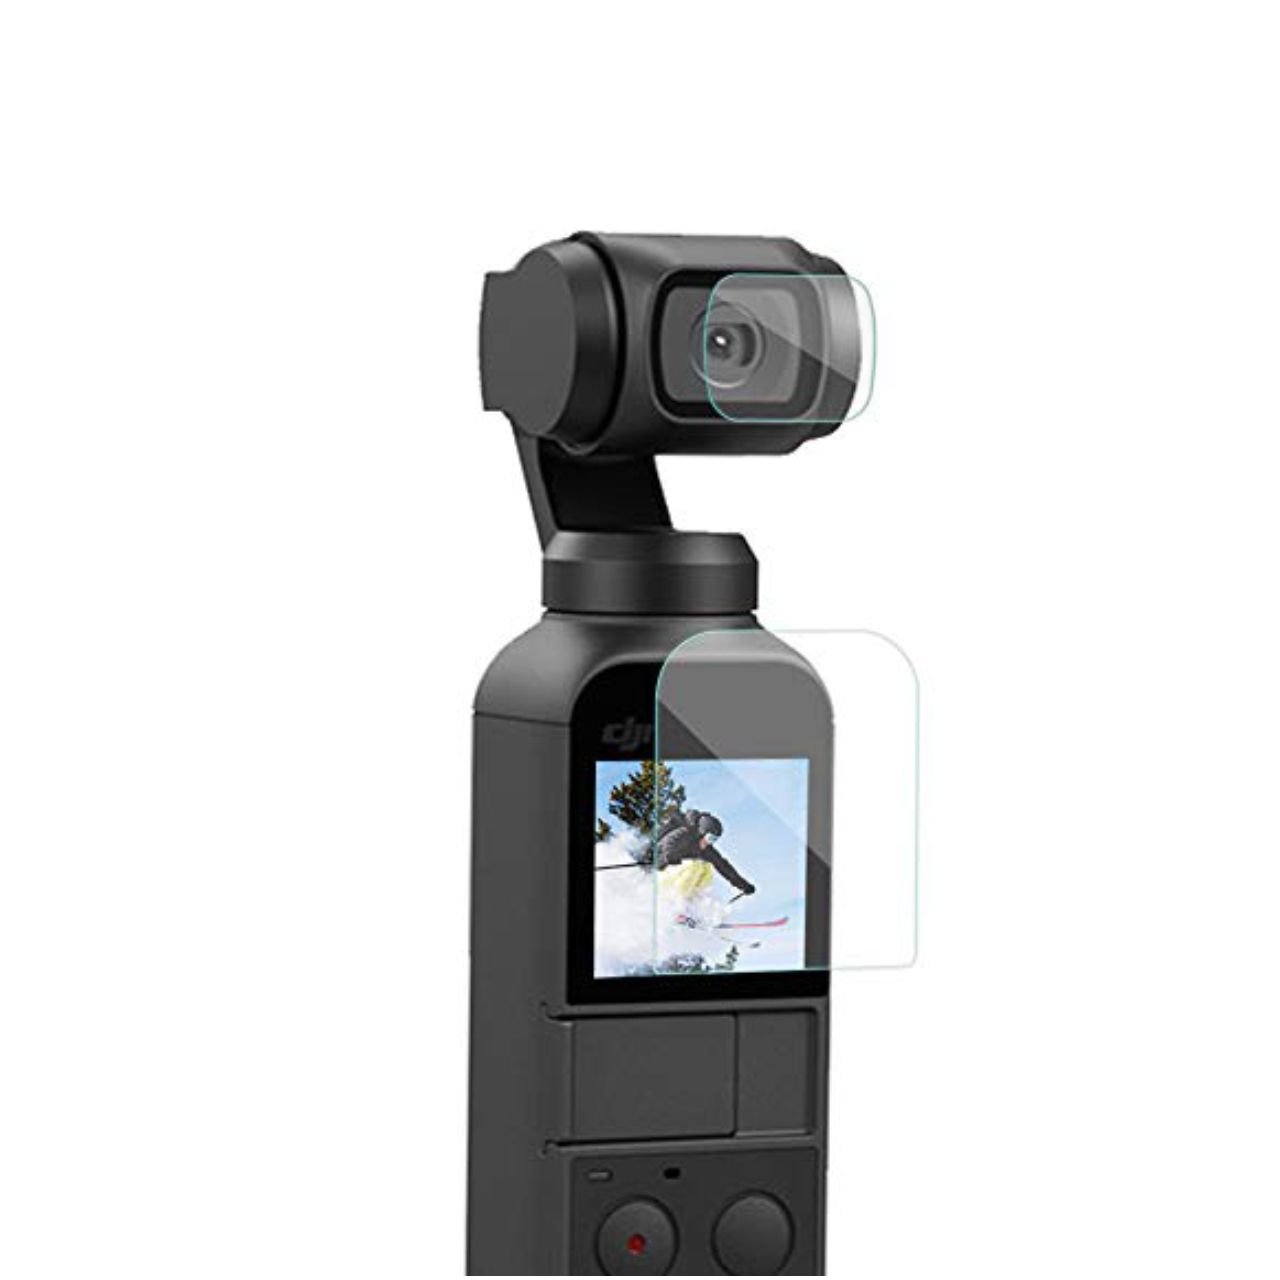 محافظ صفحه نمایش پلوز مدل PU376 مناسب برای دوربین دی جی آی Osmo Pocket